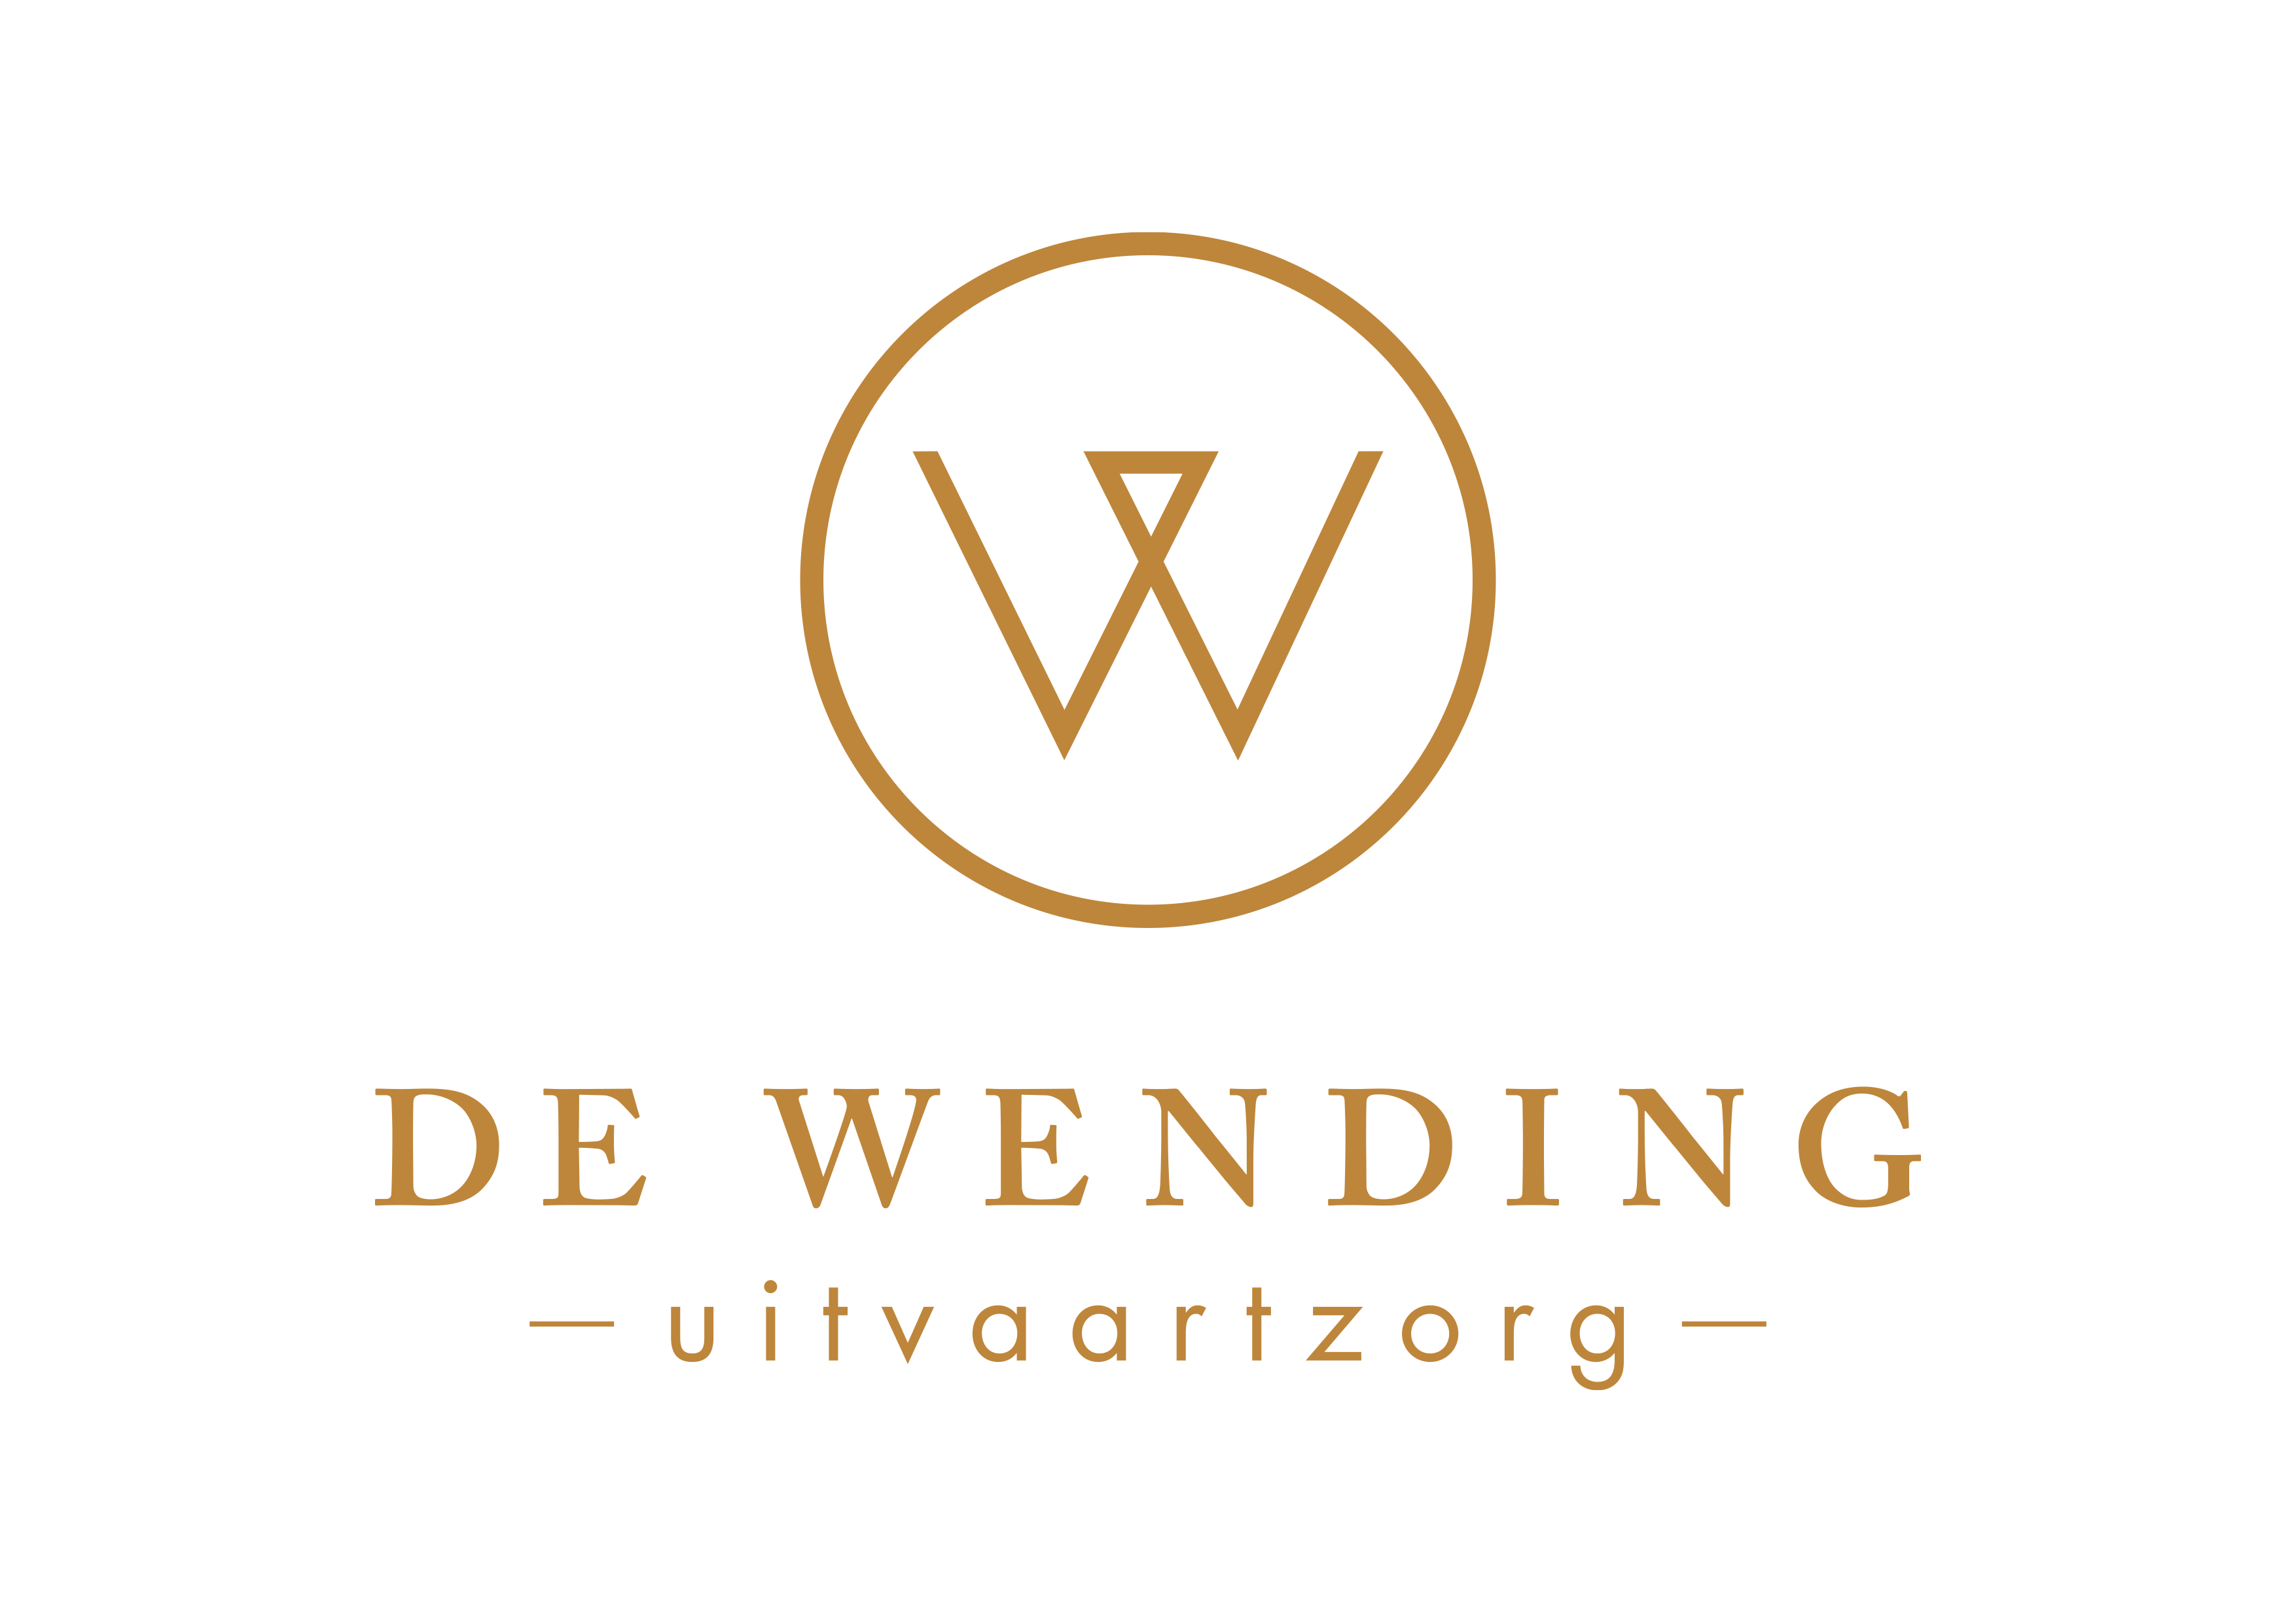 DE WENDING